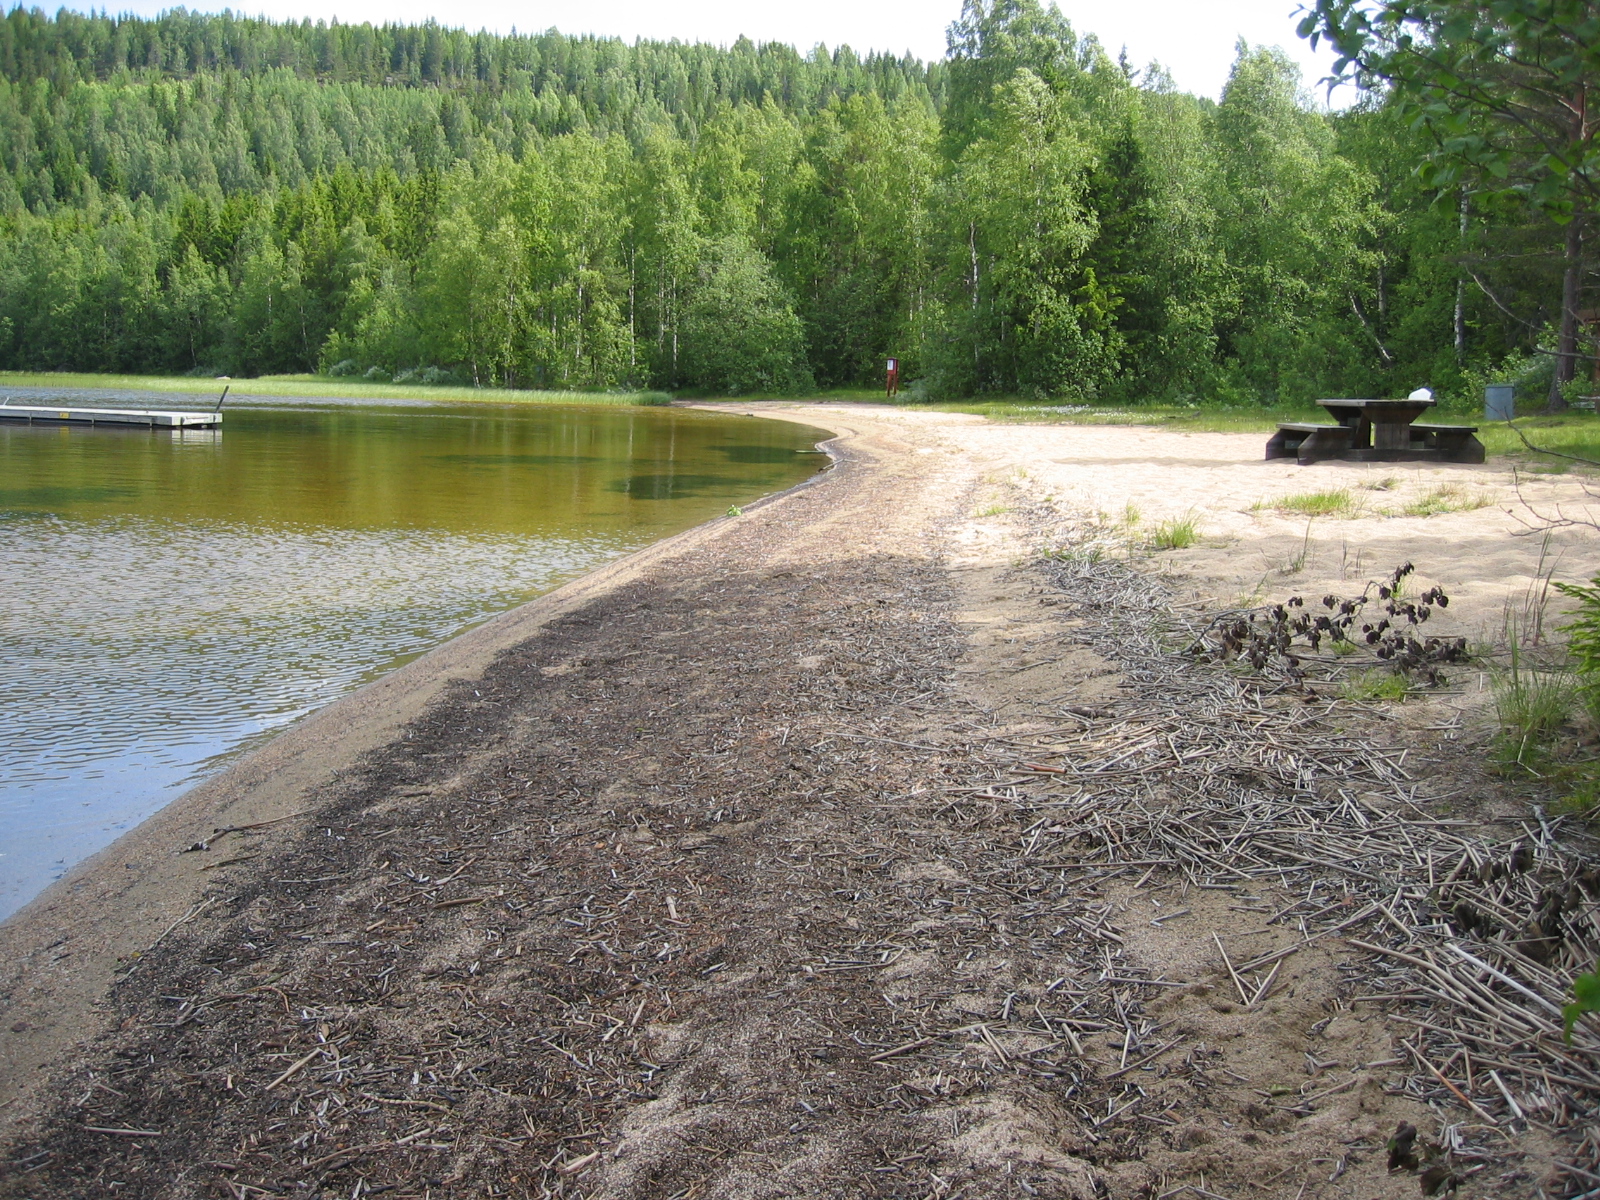 Badplats i Väster-Lövsjön, sandstrand med brygga i vattnet.